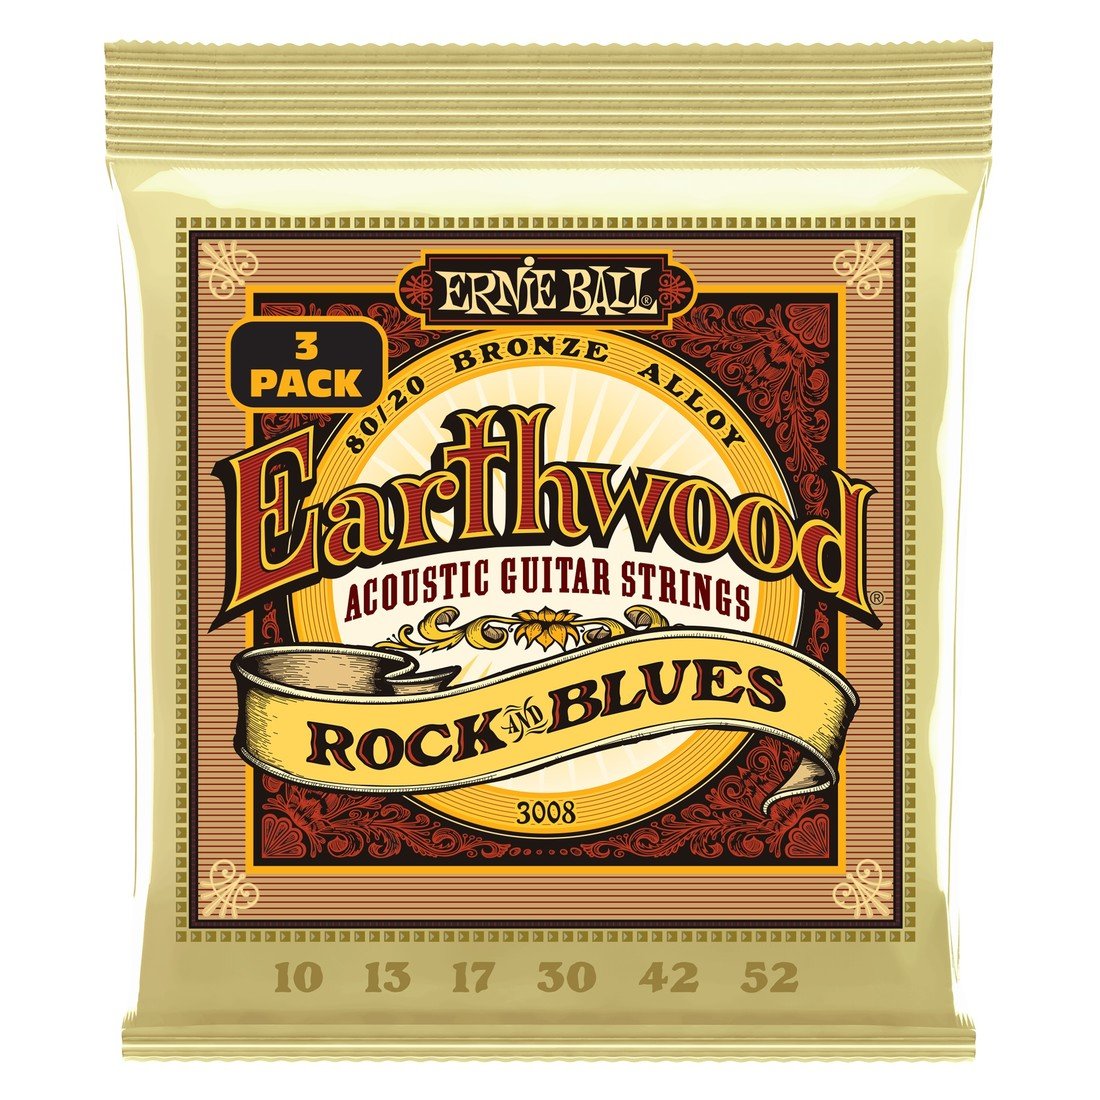 Ernie Ball Earthwood Rock & Blues 80/20 Bronze 3-Pack